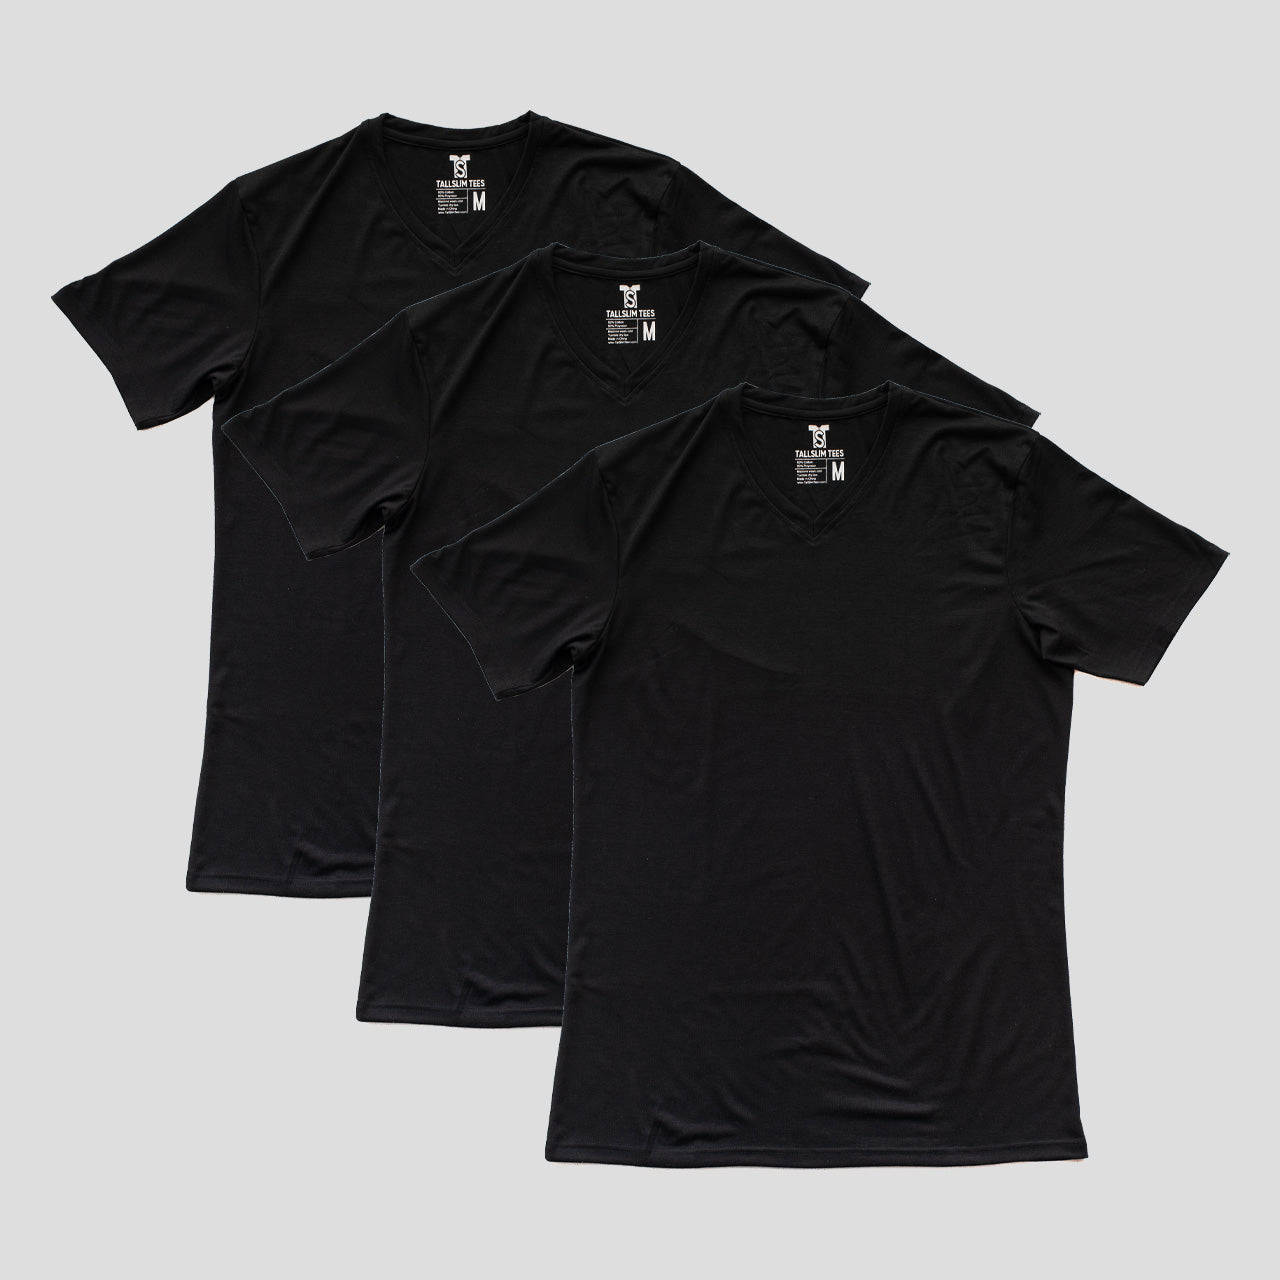 3 Pack - Black V-Neck Shirt for Tall Slim Men